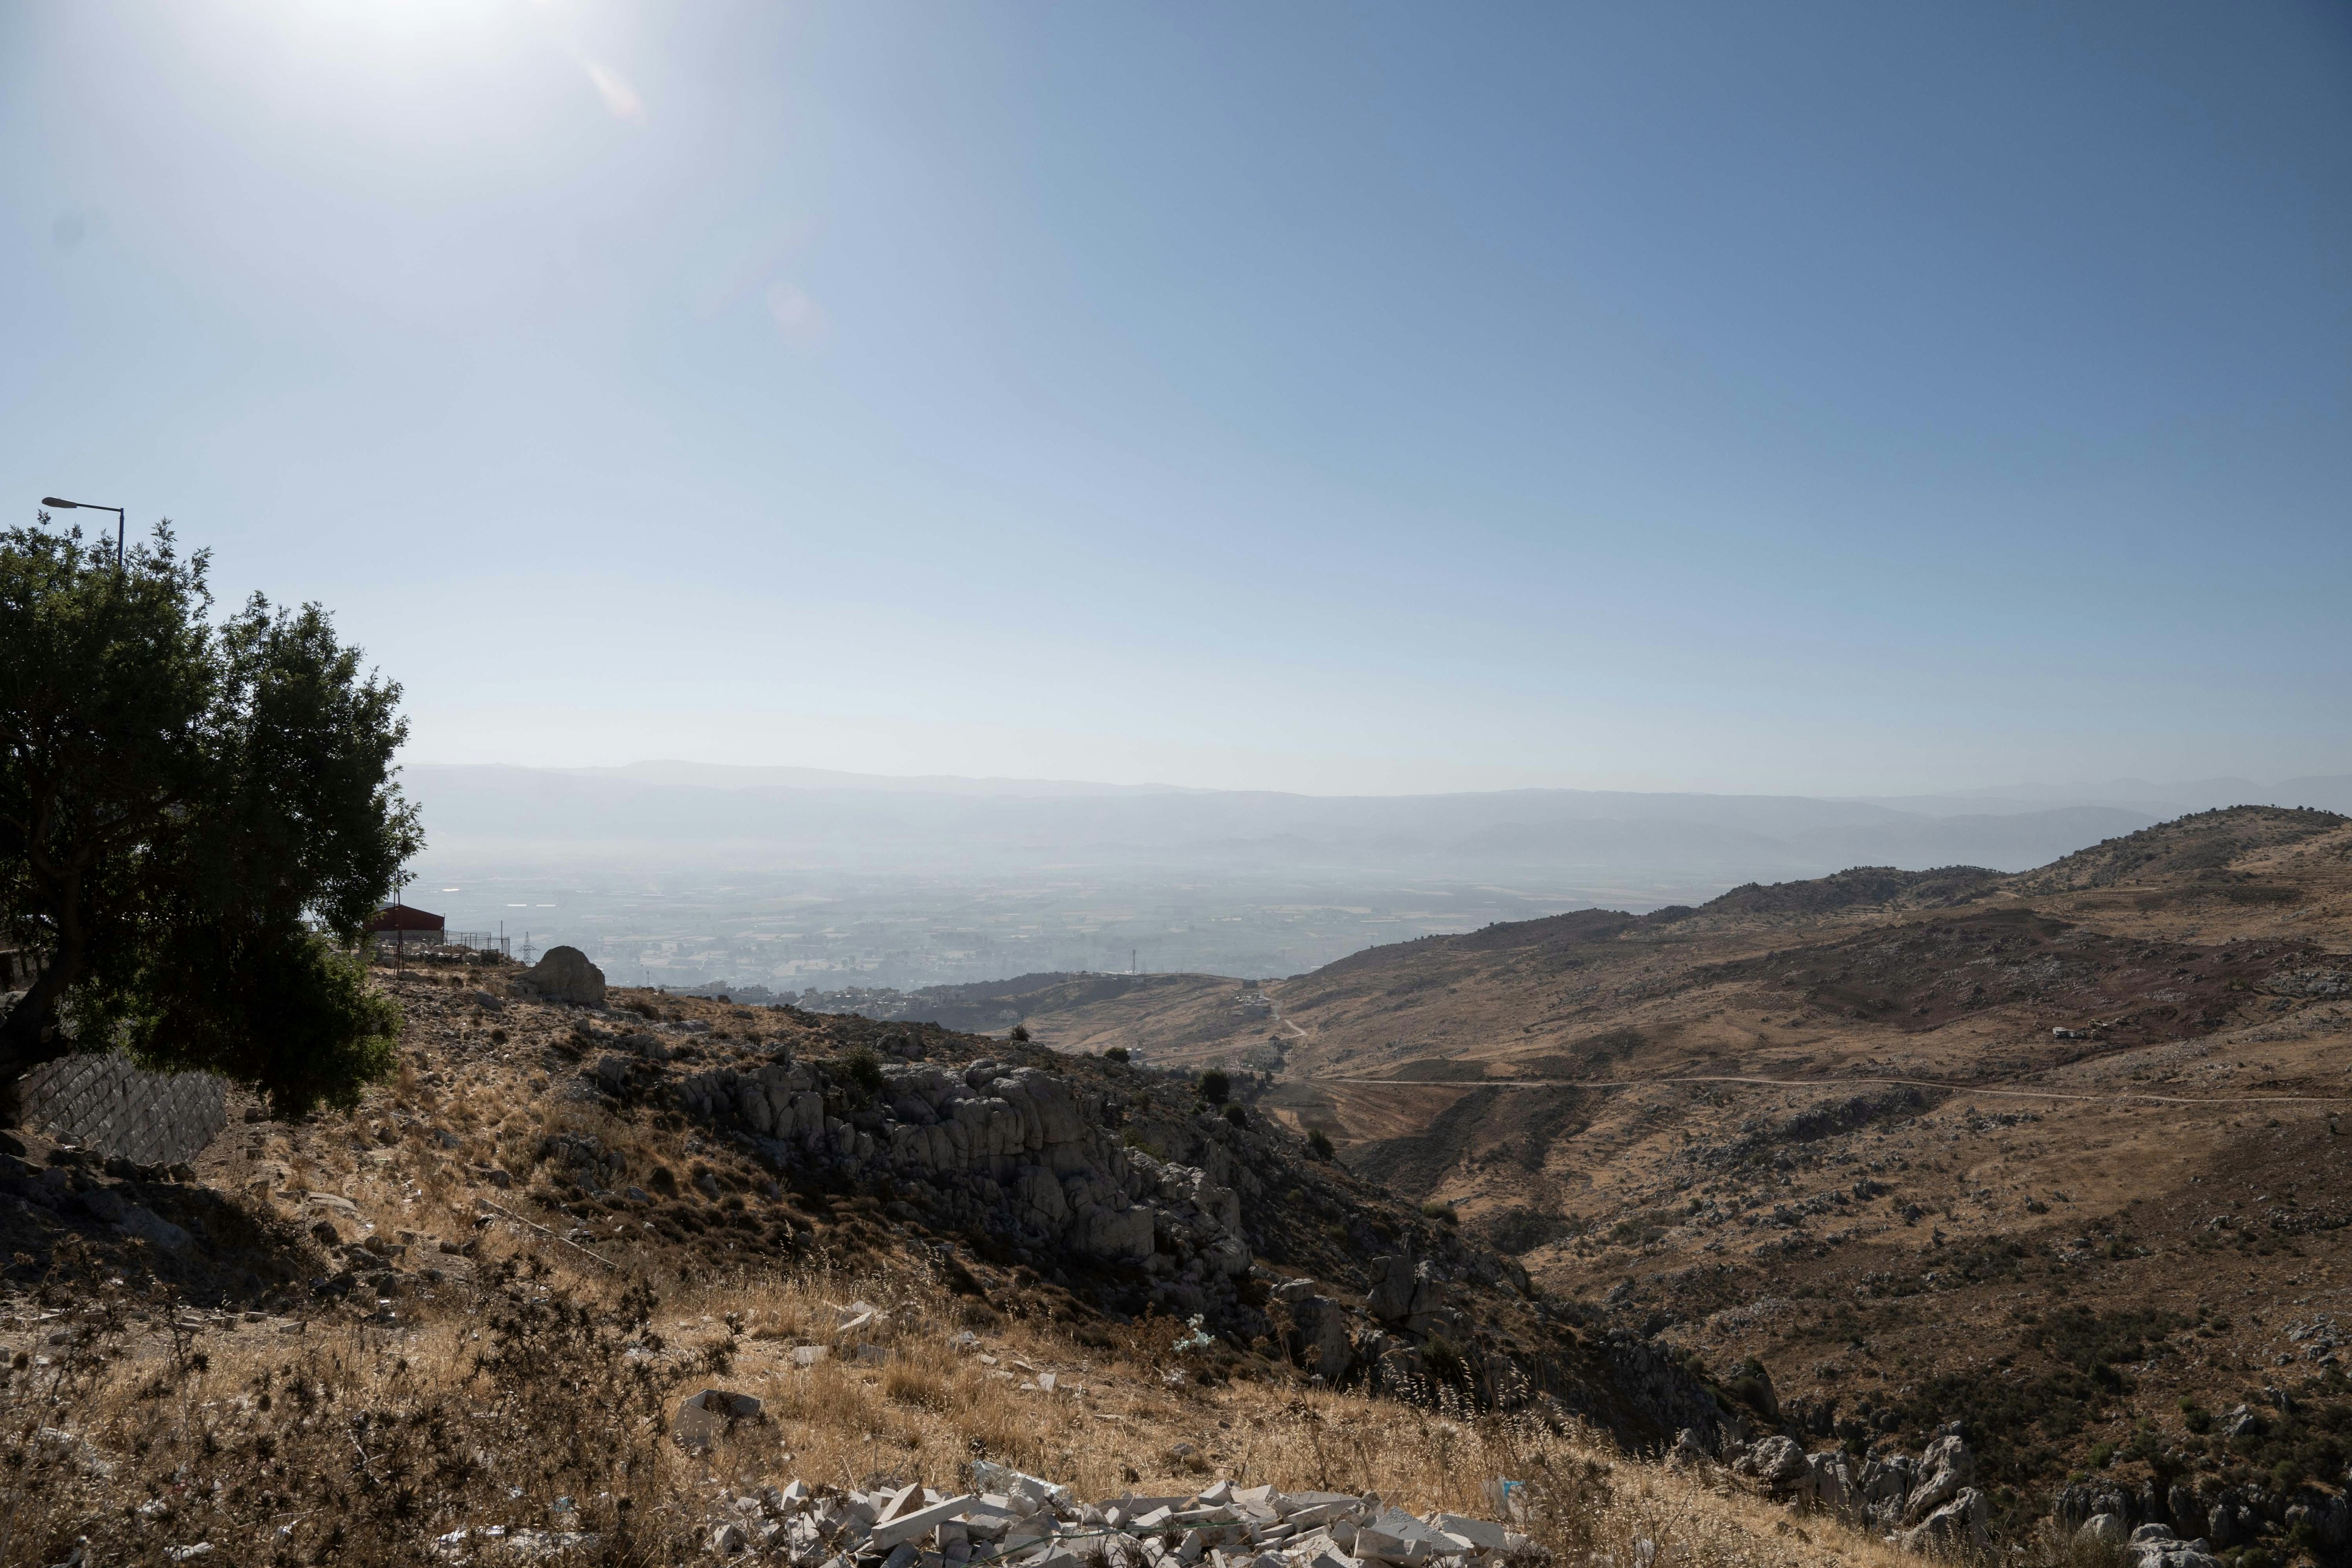 A Landscape in Lebanon.